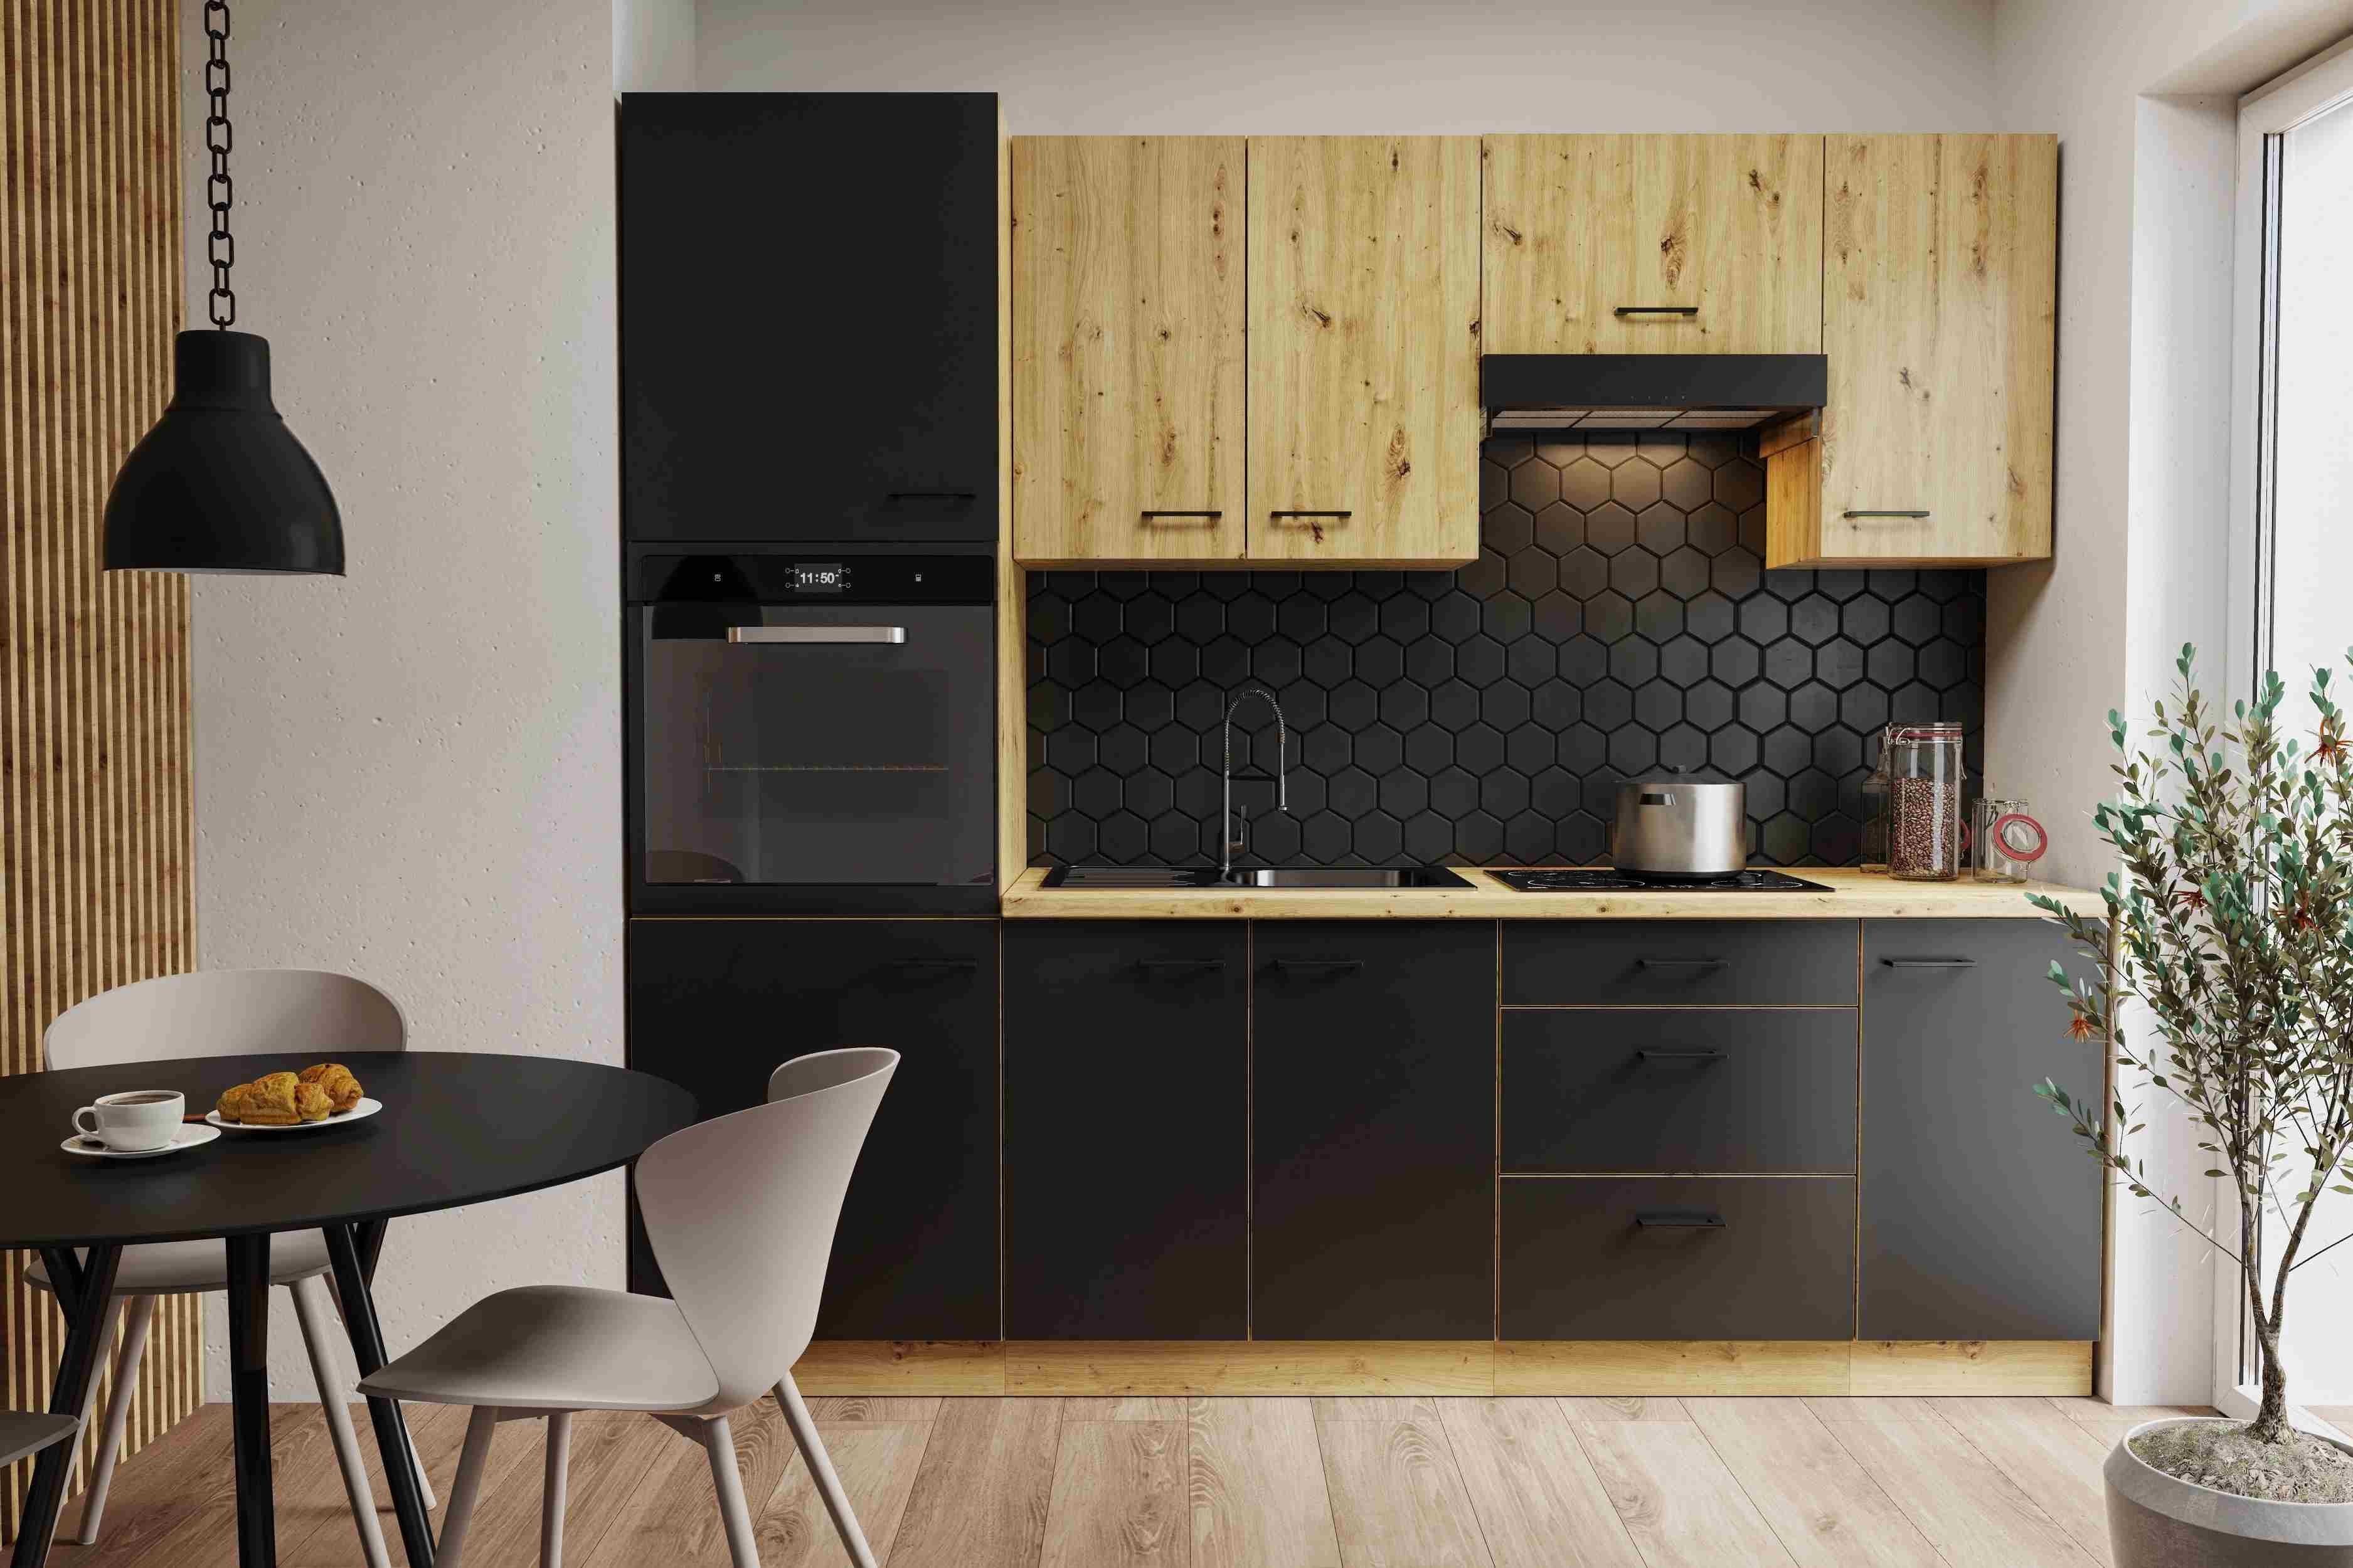 Furnix Küchenzeile Napolla 180 cm breit Küche mit Hängeschränken Trüffel-Grau, 180x85,8x60 cm, 4 Ober- und 3 Unterschränke, Arbeitsplatte